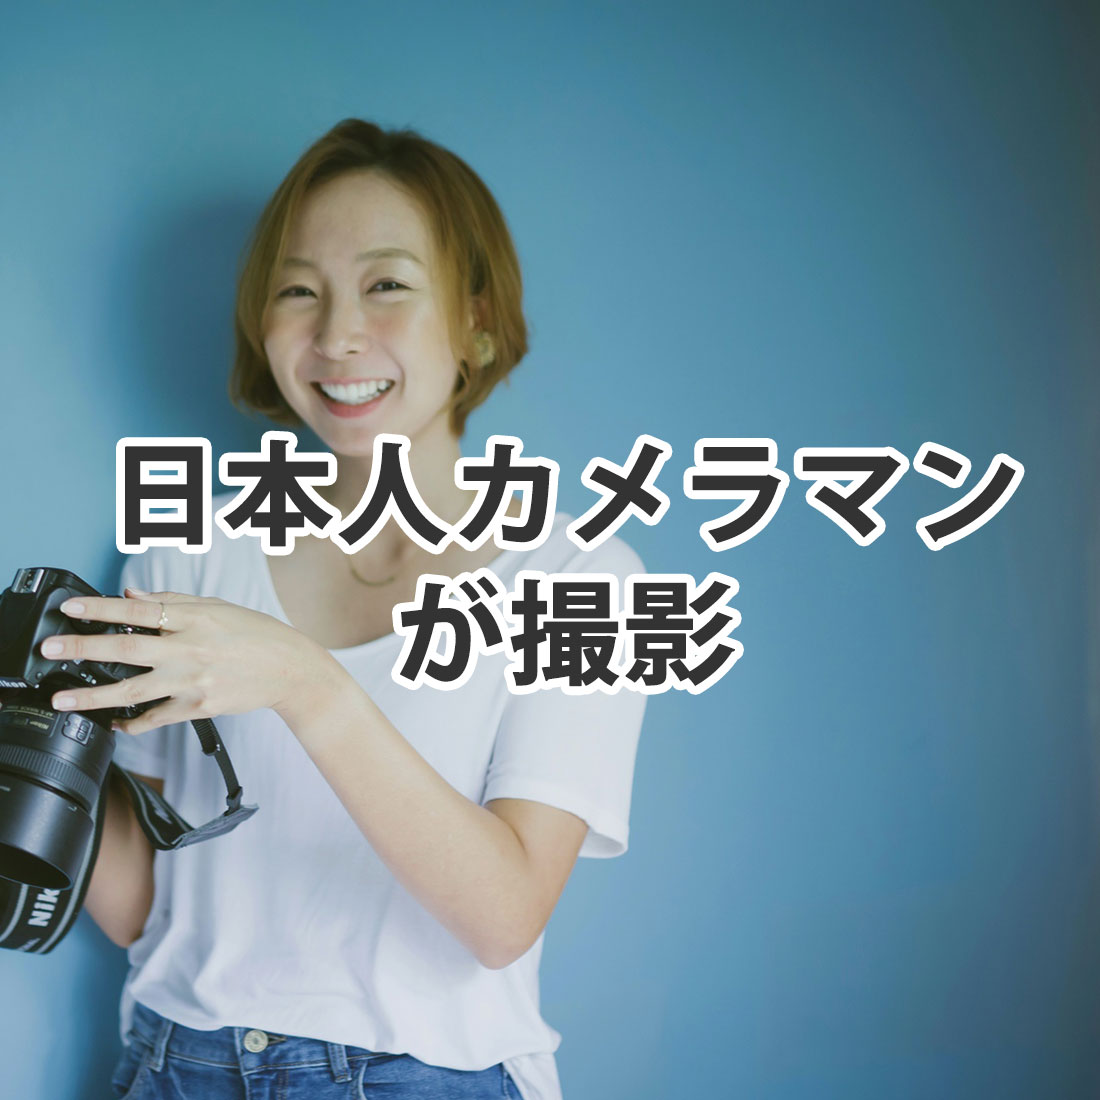 日本人カメラマンが撮影